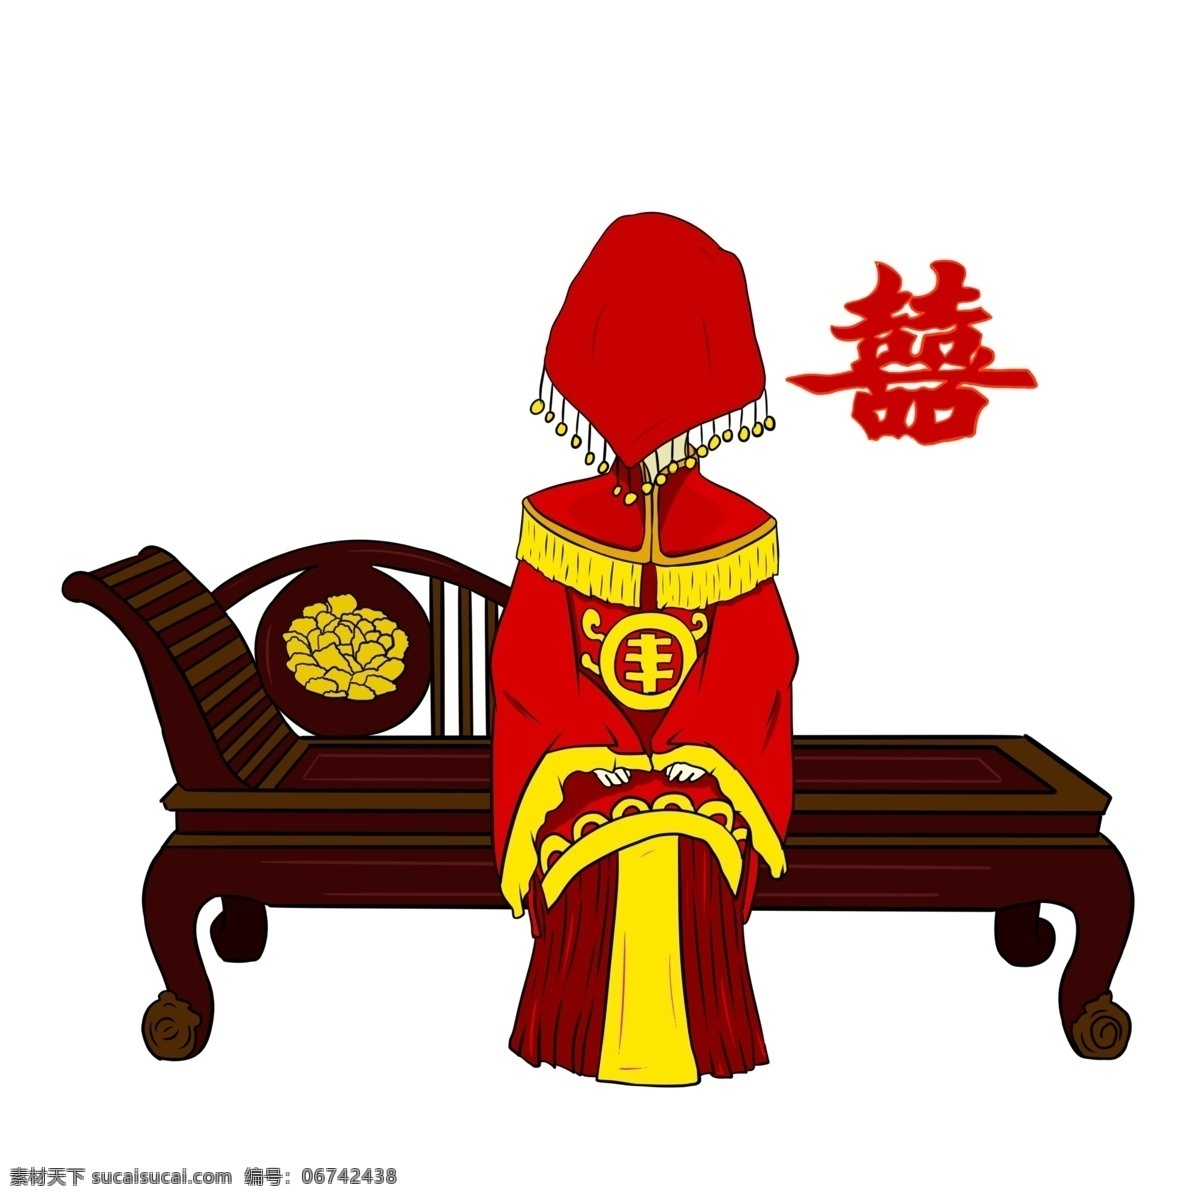 手绘 古式 婚礼 插画 商用 元素 剪纸 红色 红色盖头 古式座椅 黄色